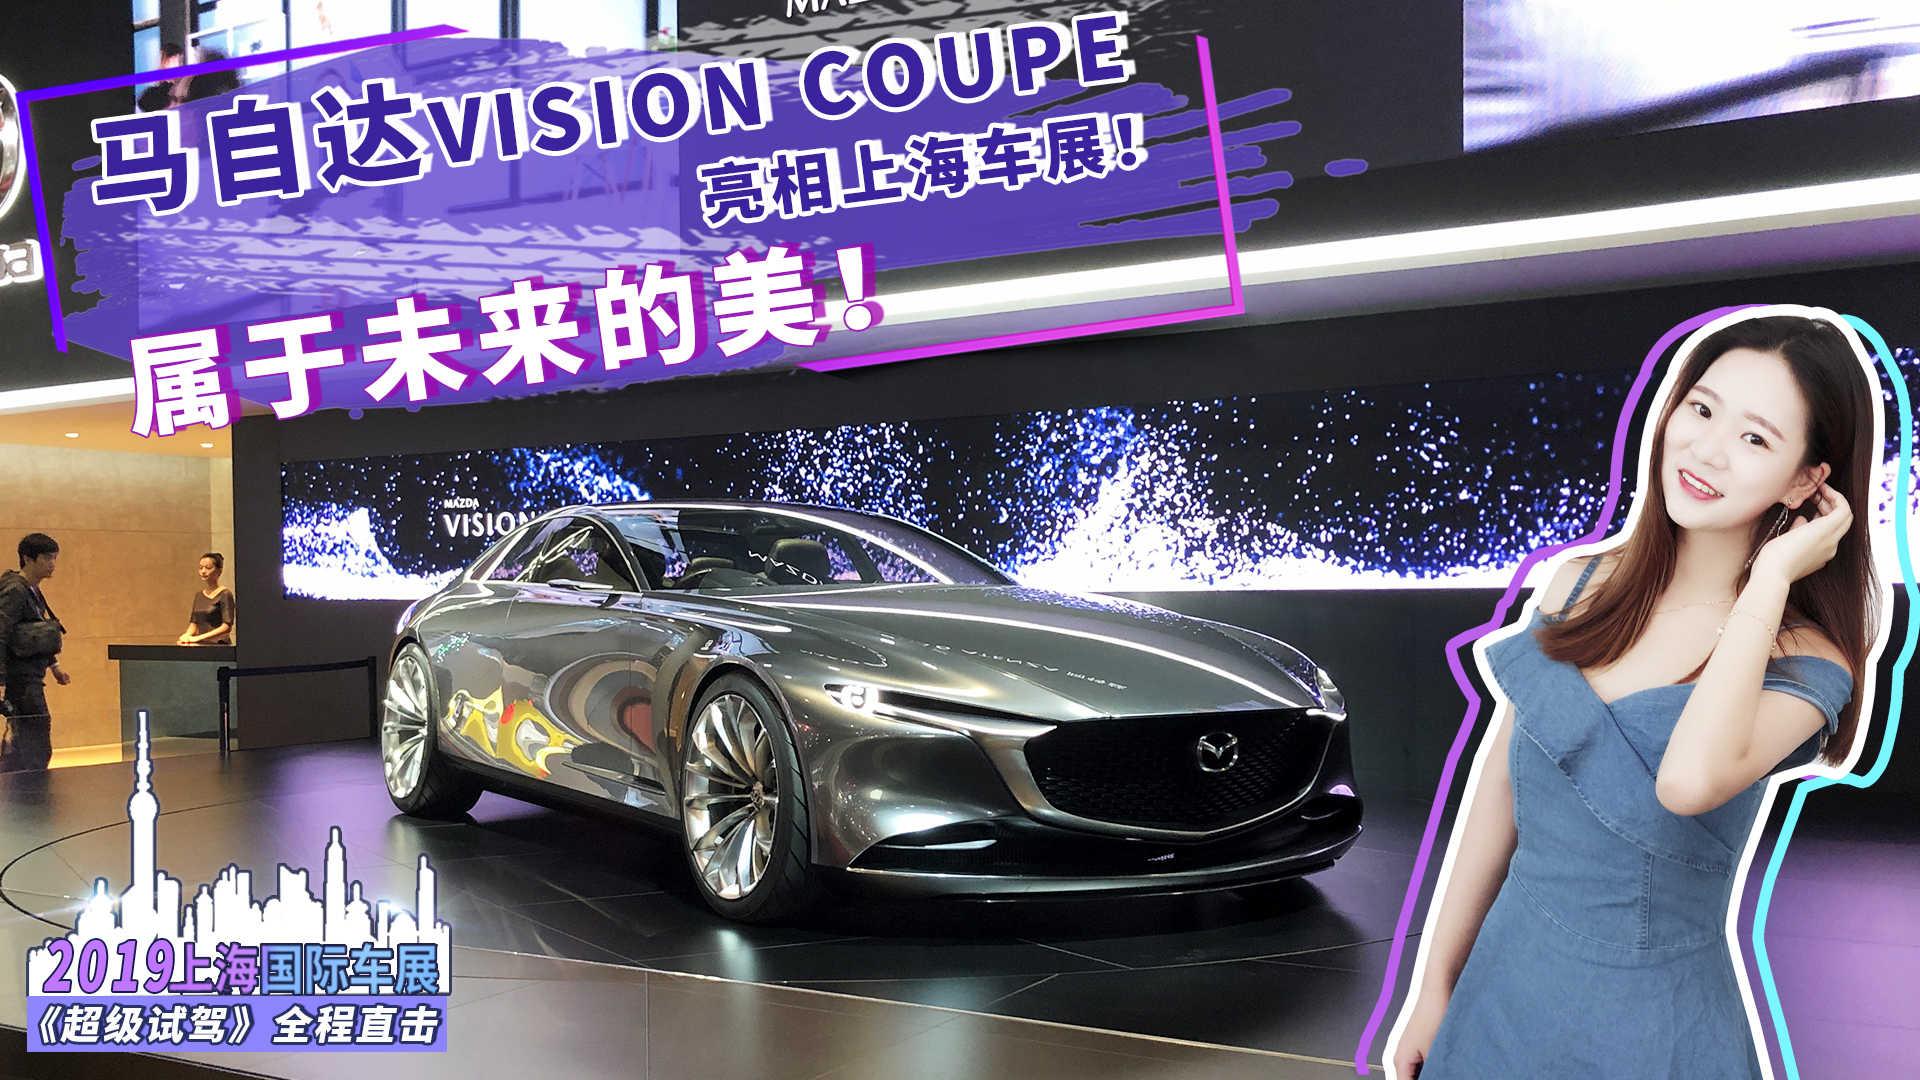 属于未来的美 马自达VISION COUPE亮相上海车展